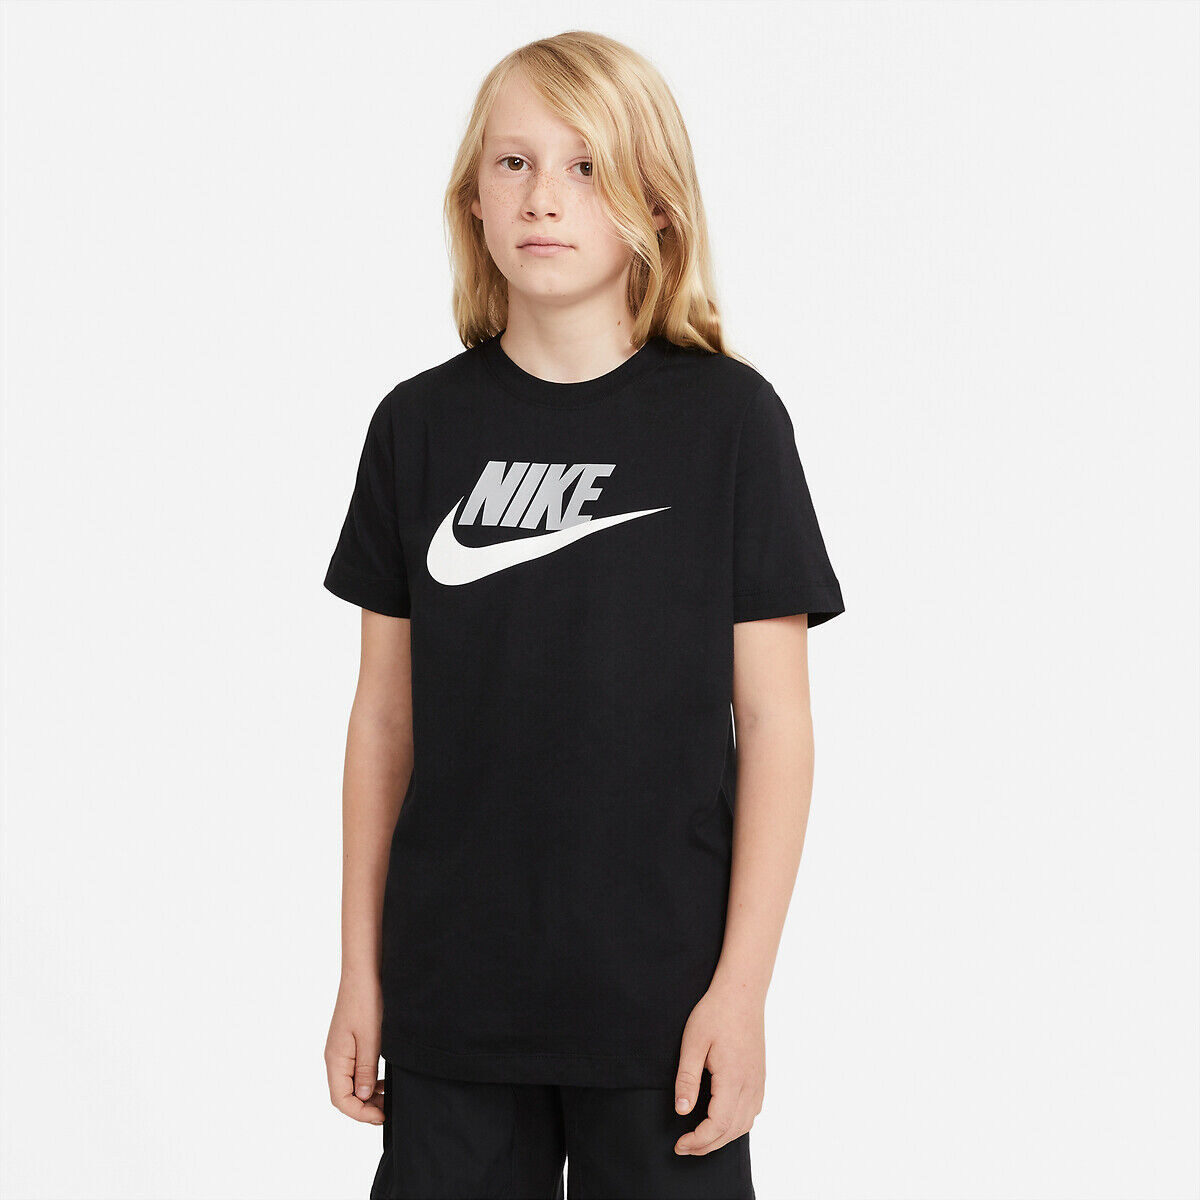 Nike T-shirt estampada de mangas curtas, 6 - 16 anos   Preto + Cinzento